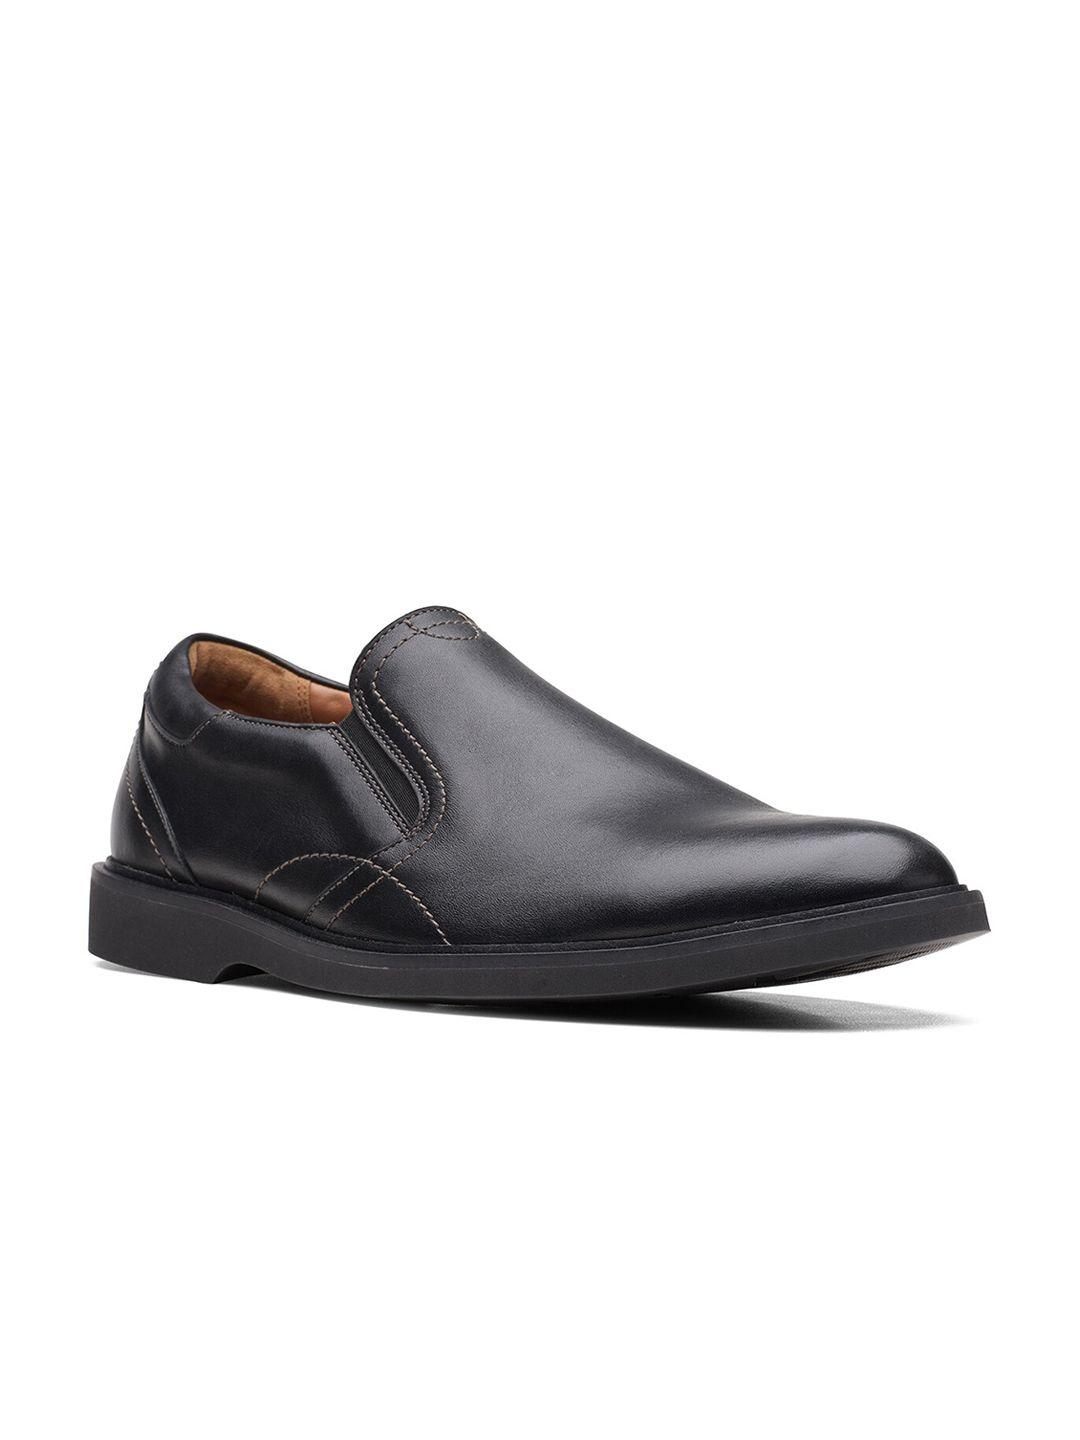 clarks-men-black-solid-leather-formal-slip-on-shoes